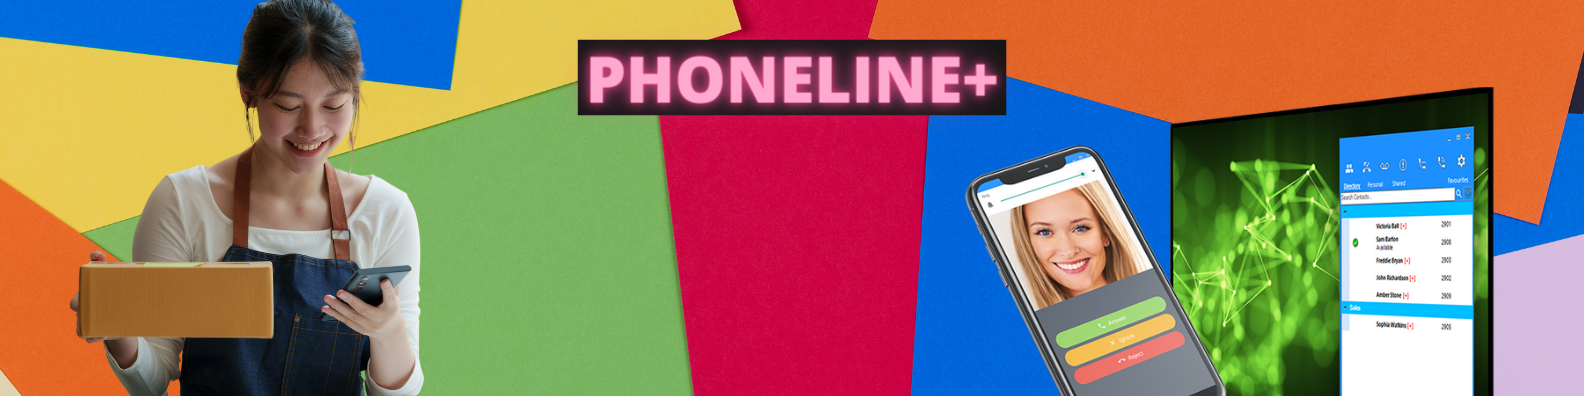 Pink PhoneLine+